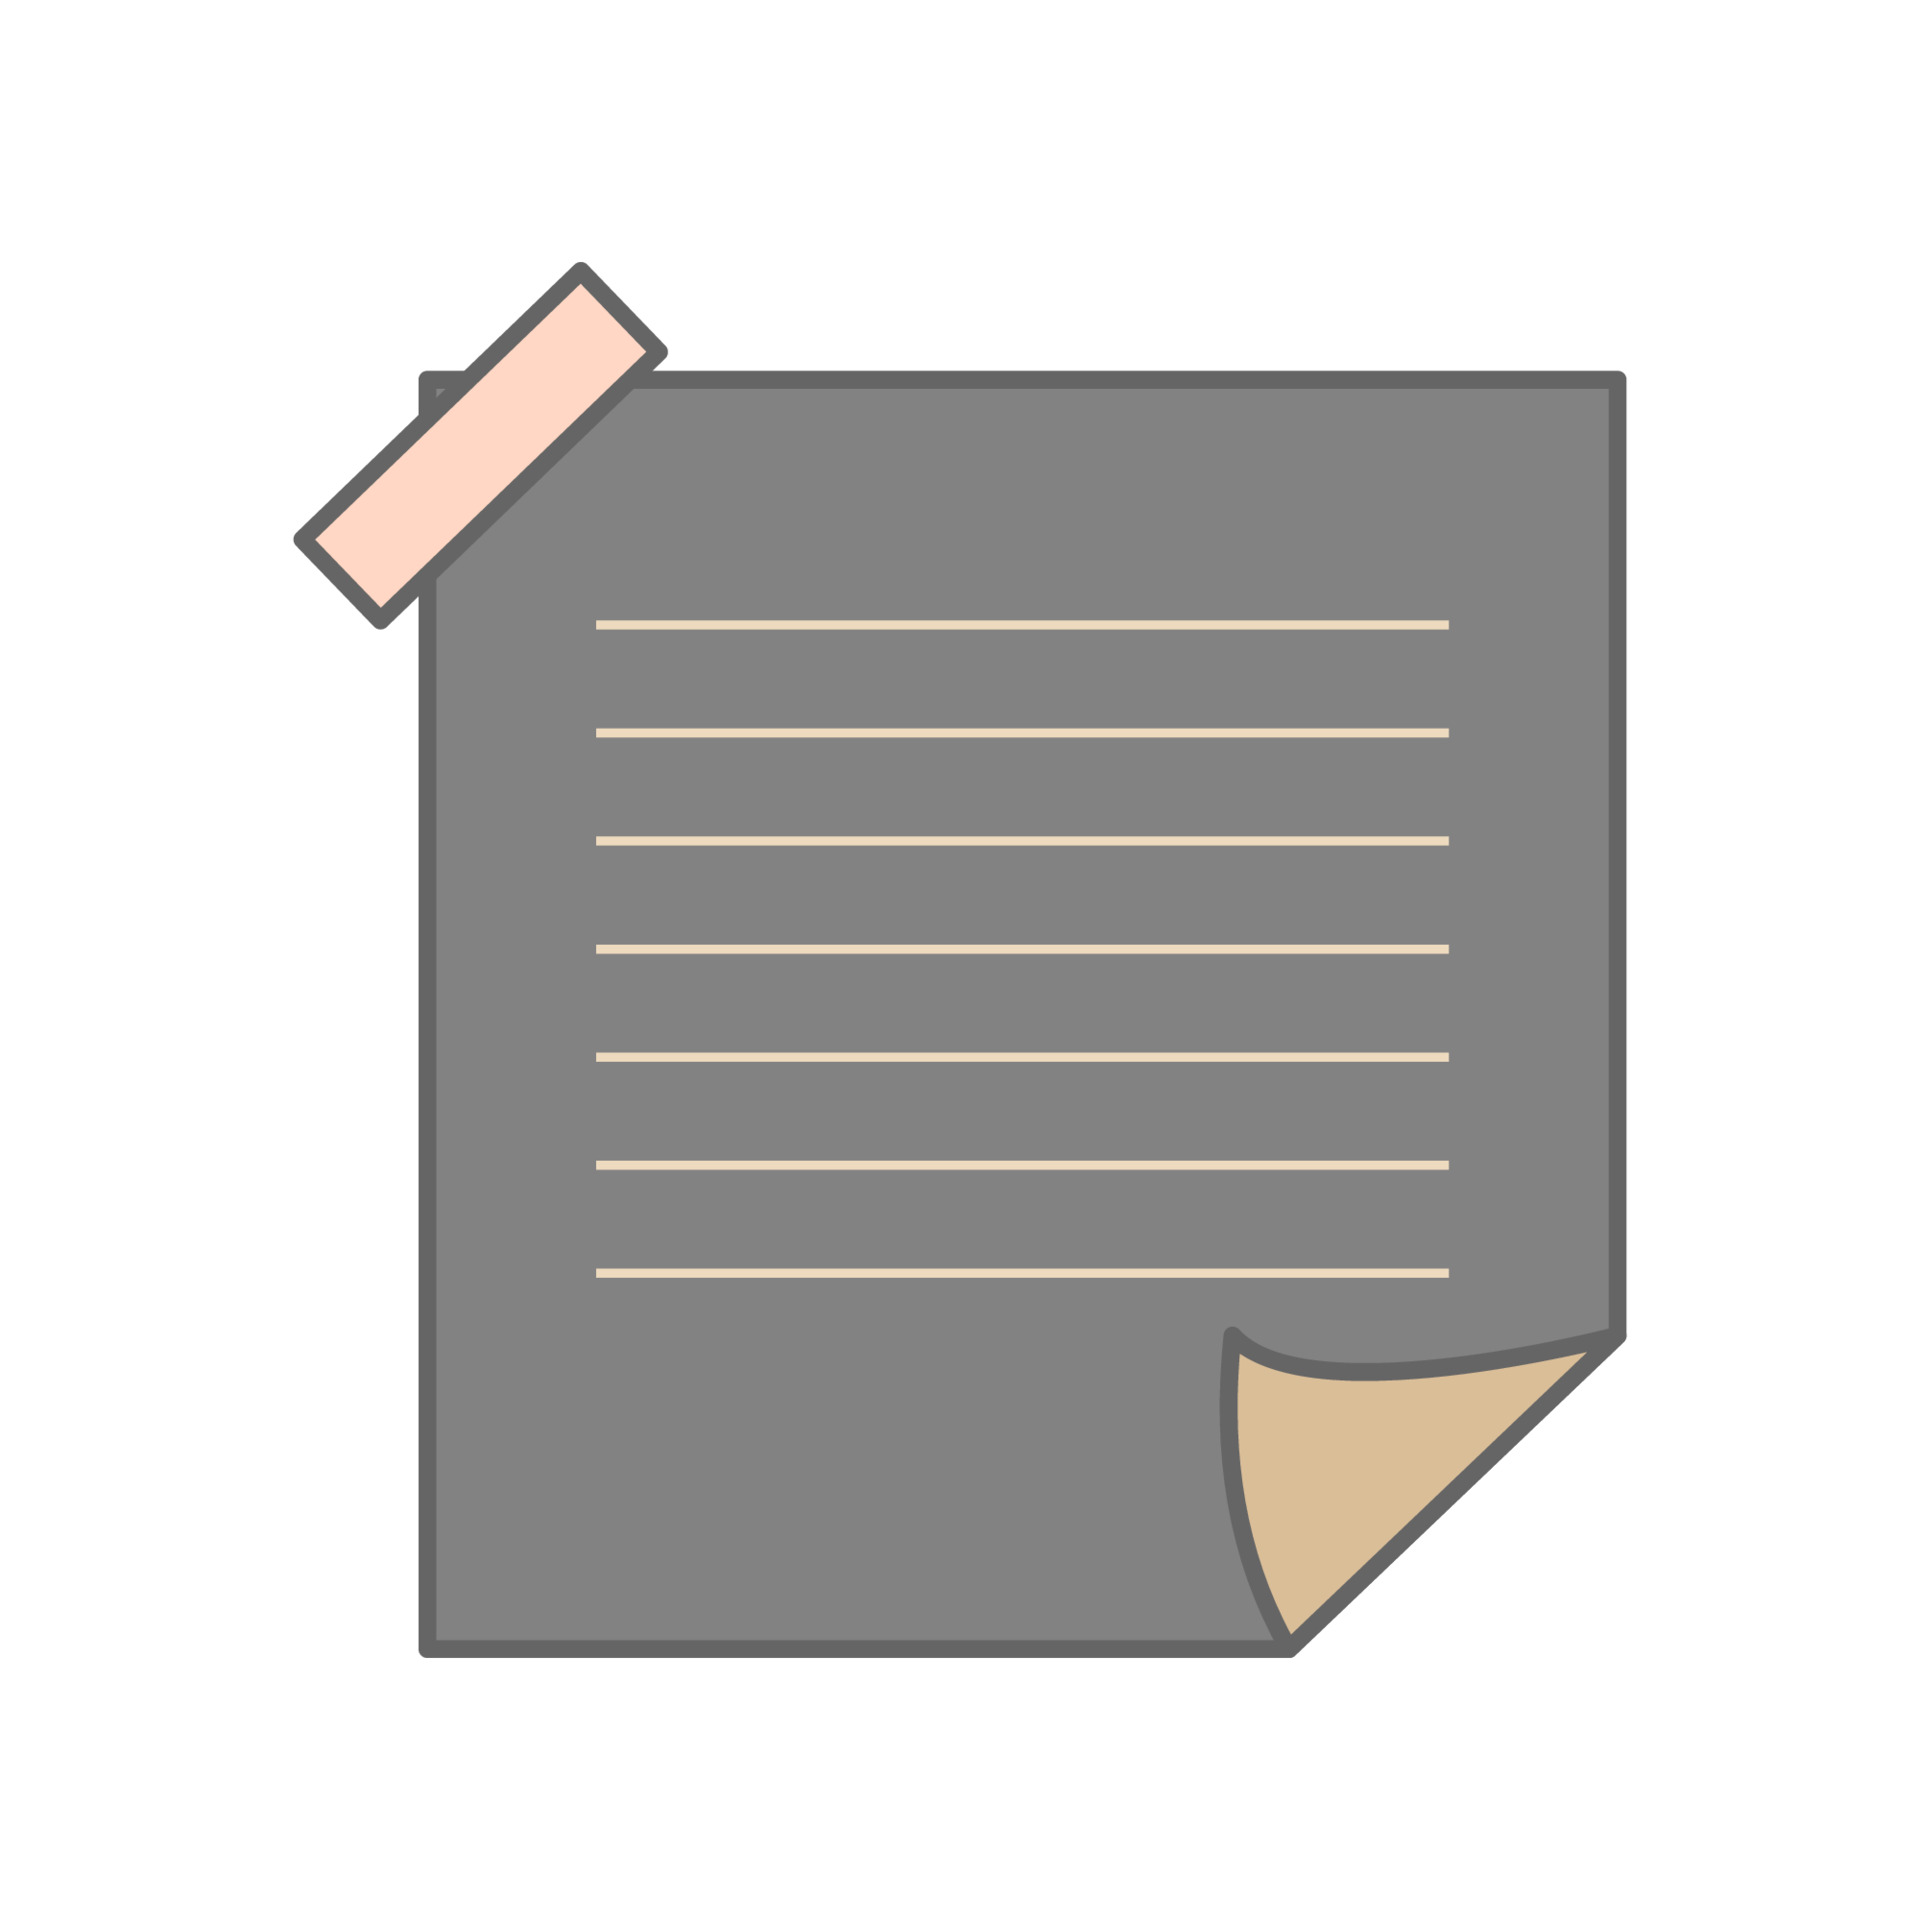 Bạn đang tìm kiếm một giấy ghi chú đen trắng đơn giản để ghi lại các ý tưởng của mình? Blank black notepad paper sẽ là sự lựa chọn hoàn hảo cho bạn. Với định dạng không ràng buộc và không gian thoải mái, bạn sẽ có thể tận dụng những trang giấy này để ghi lại mọi suy nghĩ và ý tưởng của mình.